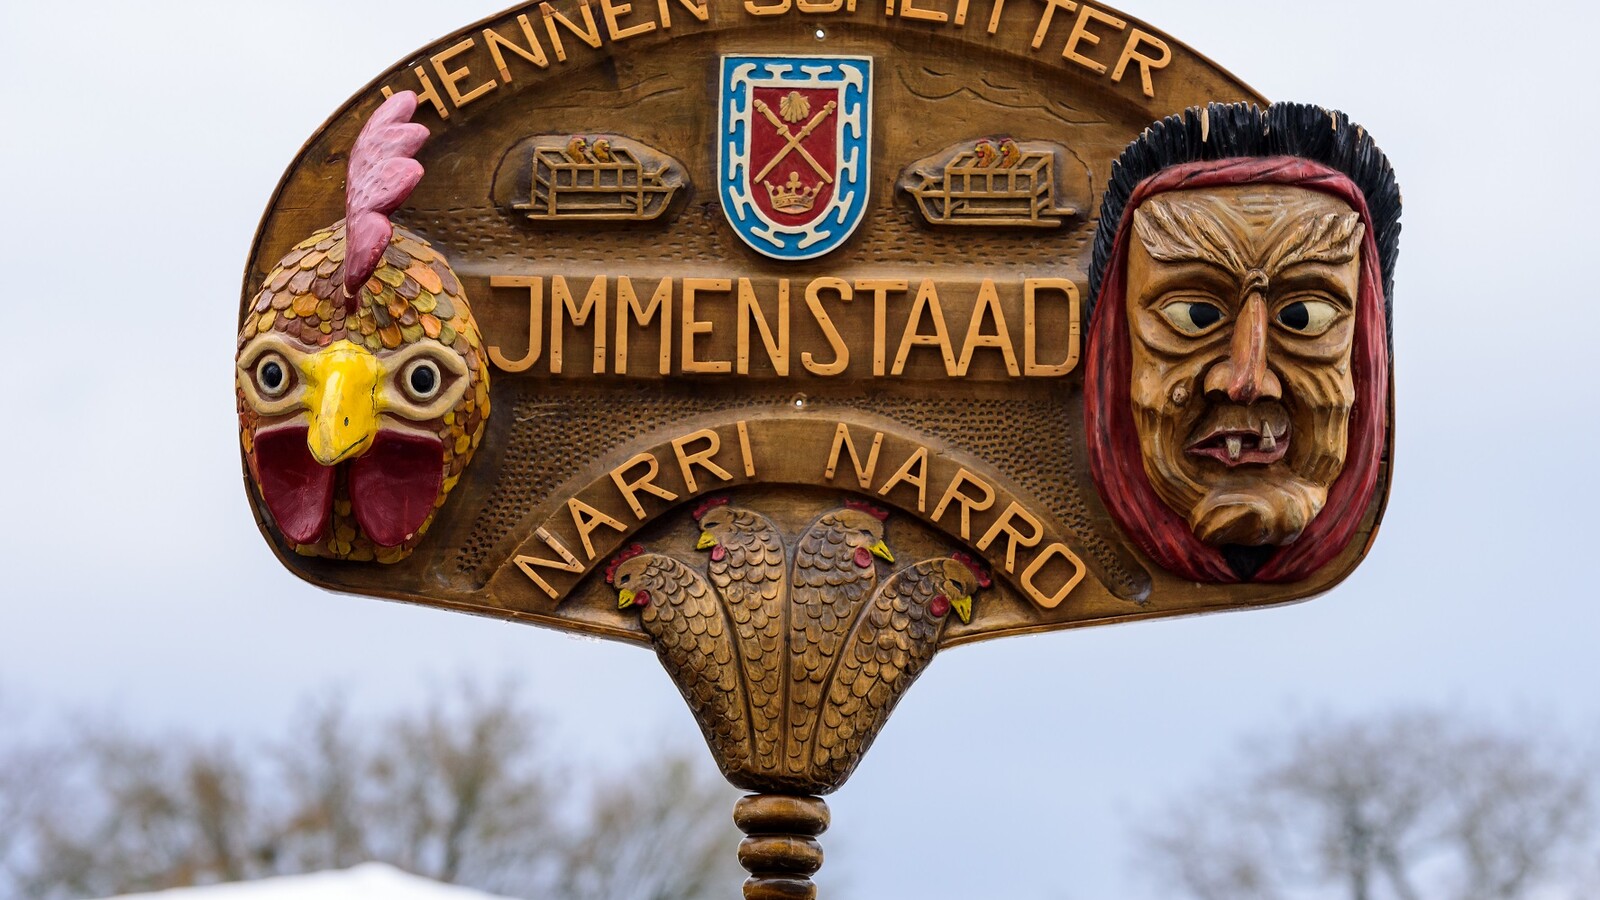 Holzschild mit der Aufschrift "Hennenschlitter Immenstaad, Narri Naro" sowie zwei kleinen geschnitzten Masken, die rechts und links abgebildet sind.